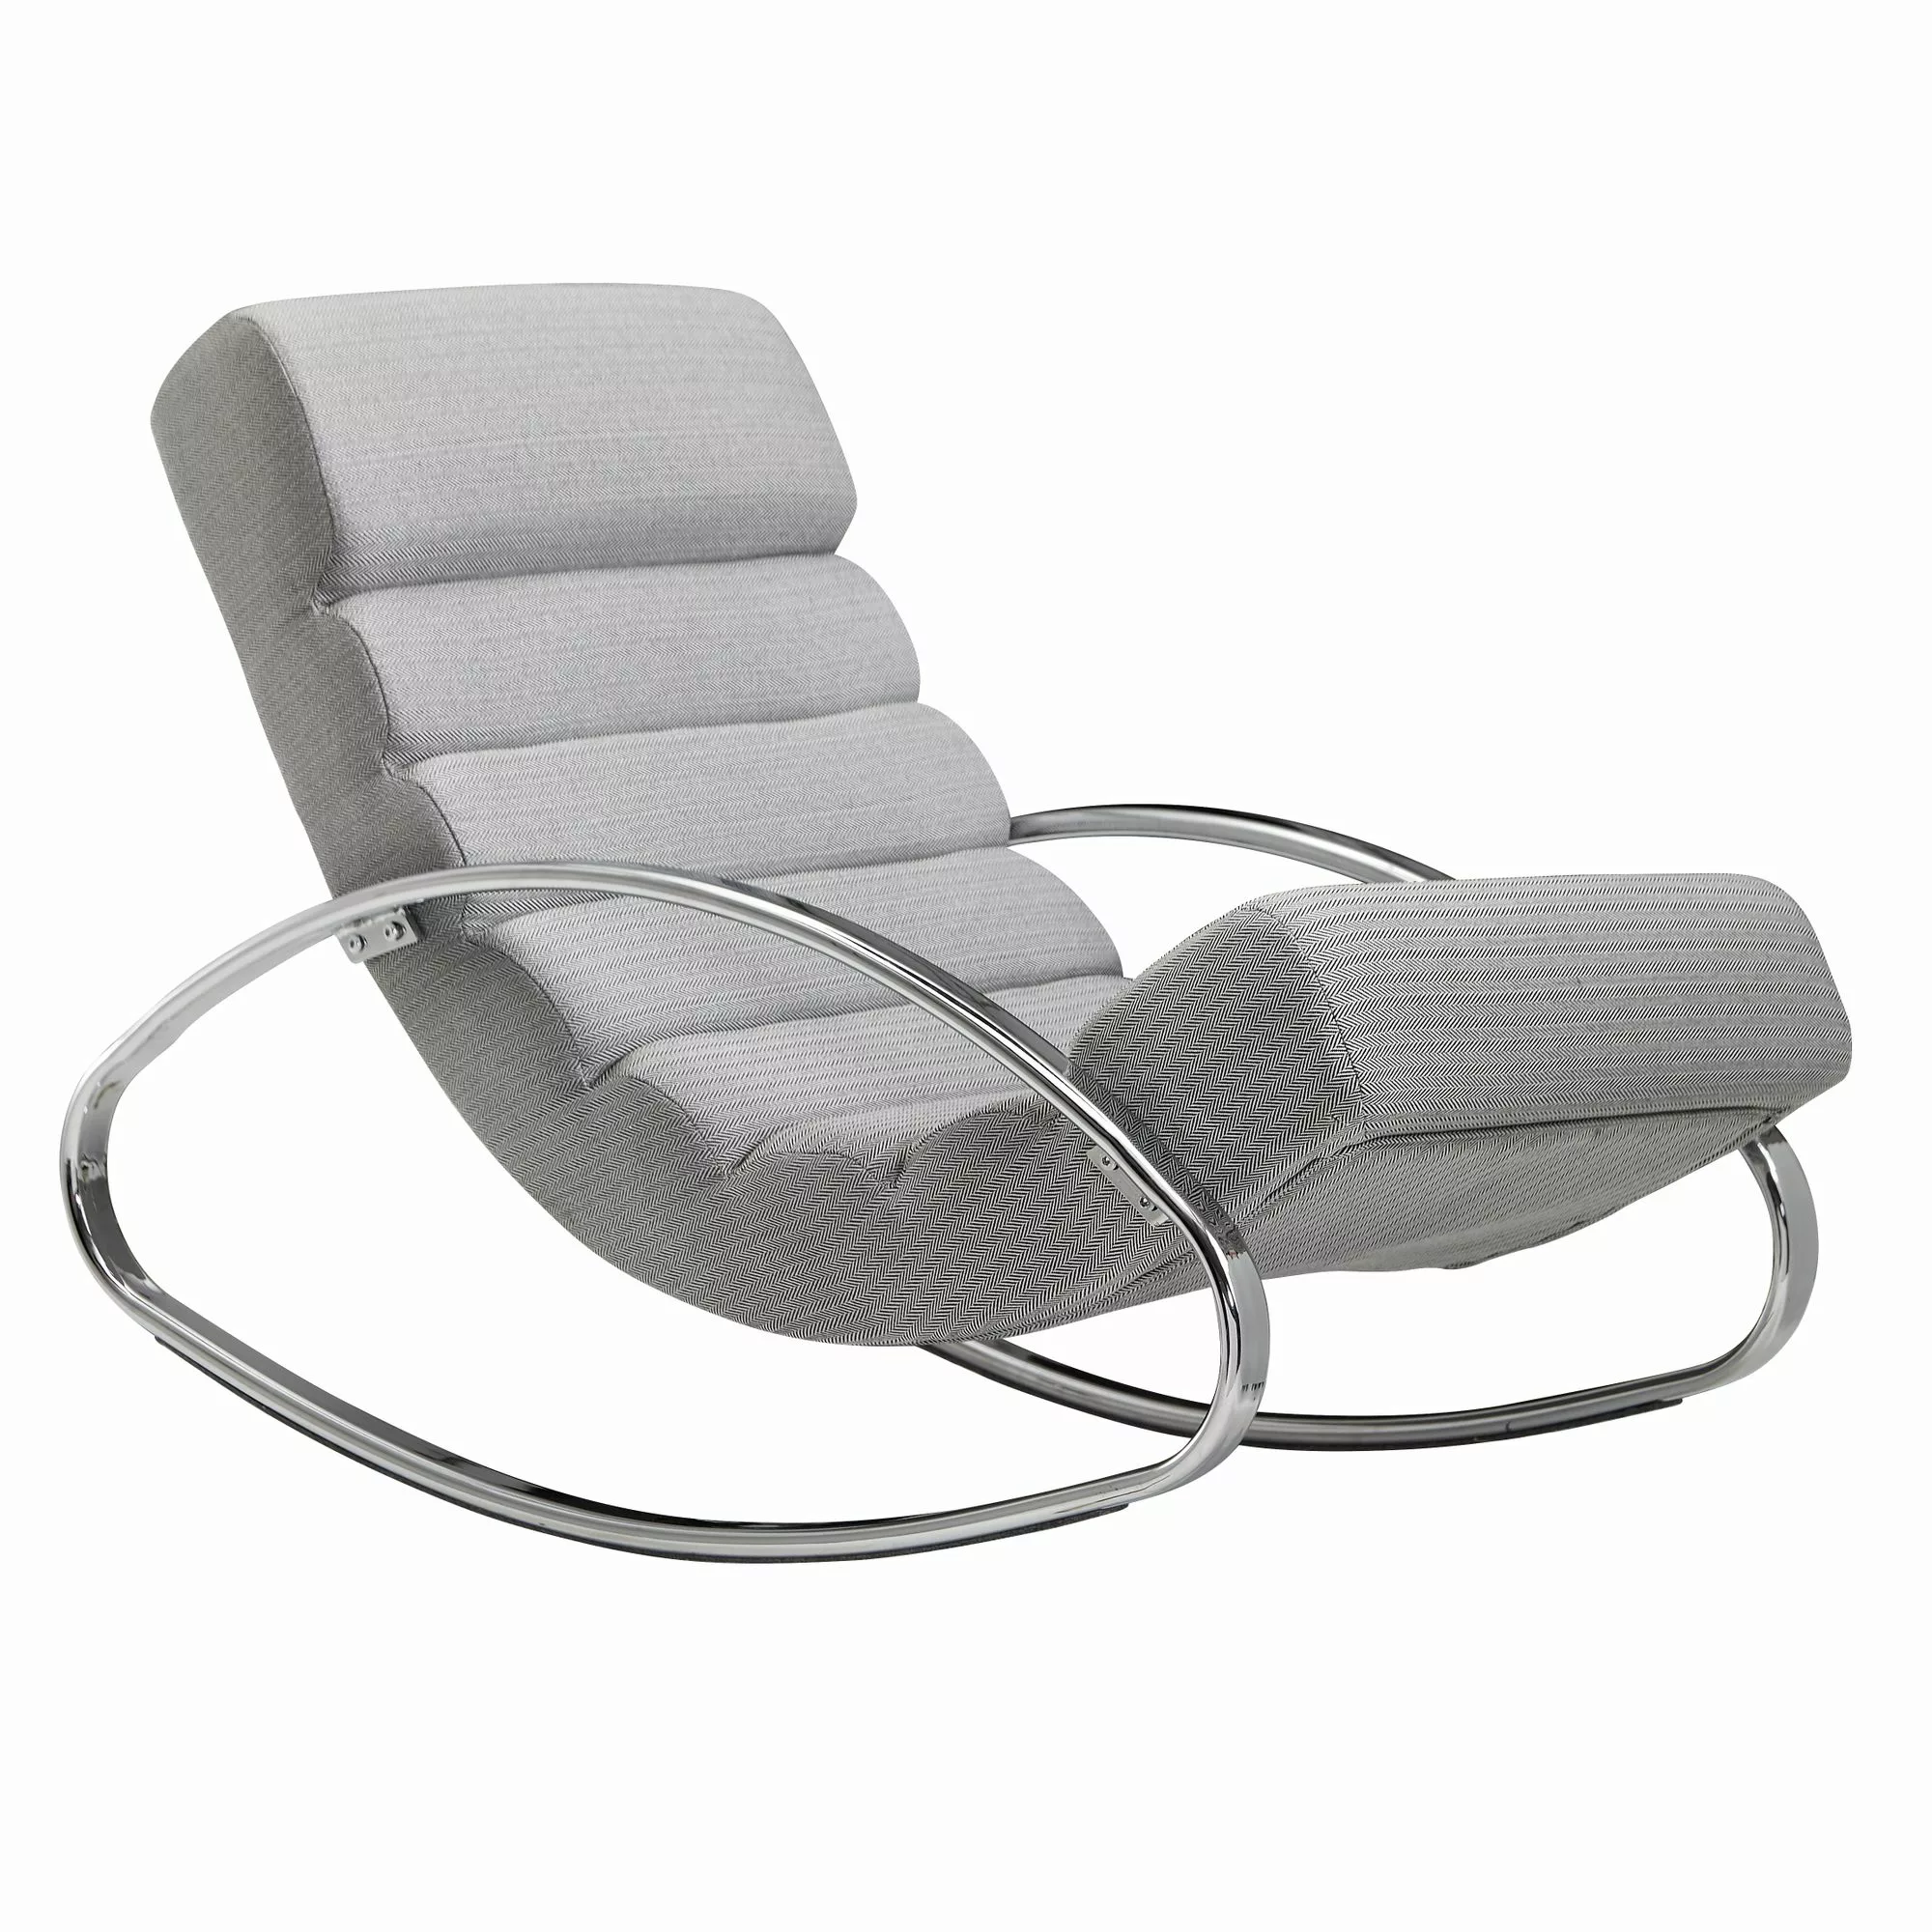 Relaxliege Grau / Silber 110 kg Belastbar Relaxsessel 61x81x111 cm | Design günstig online kaufen